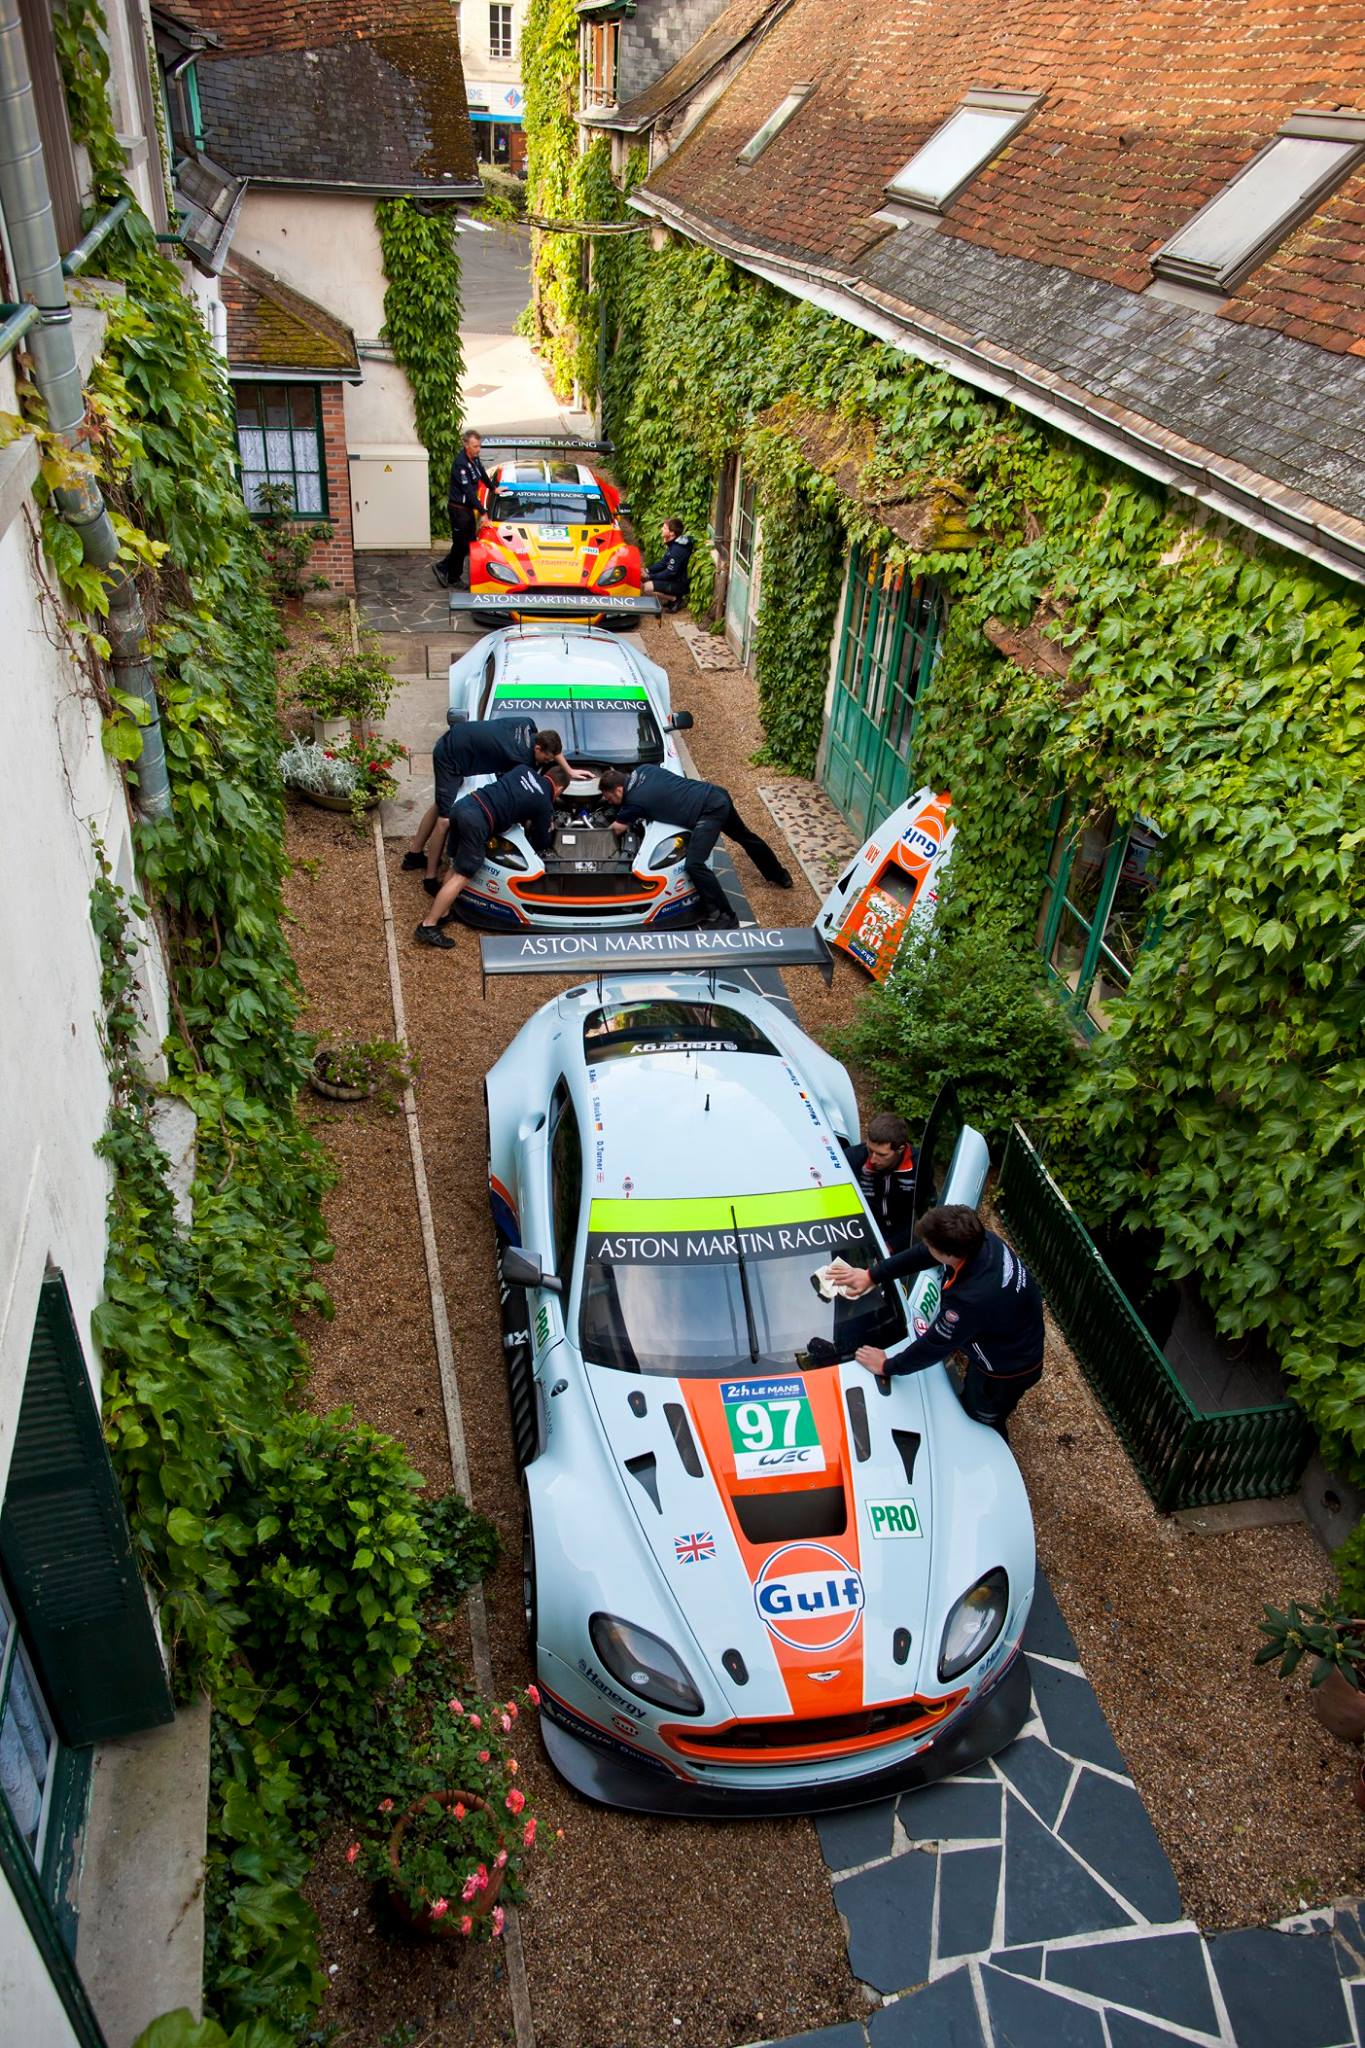 Le Mans - Aston Martin Hôtel de France La Chartre-sur-le-Loir - 03